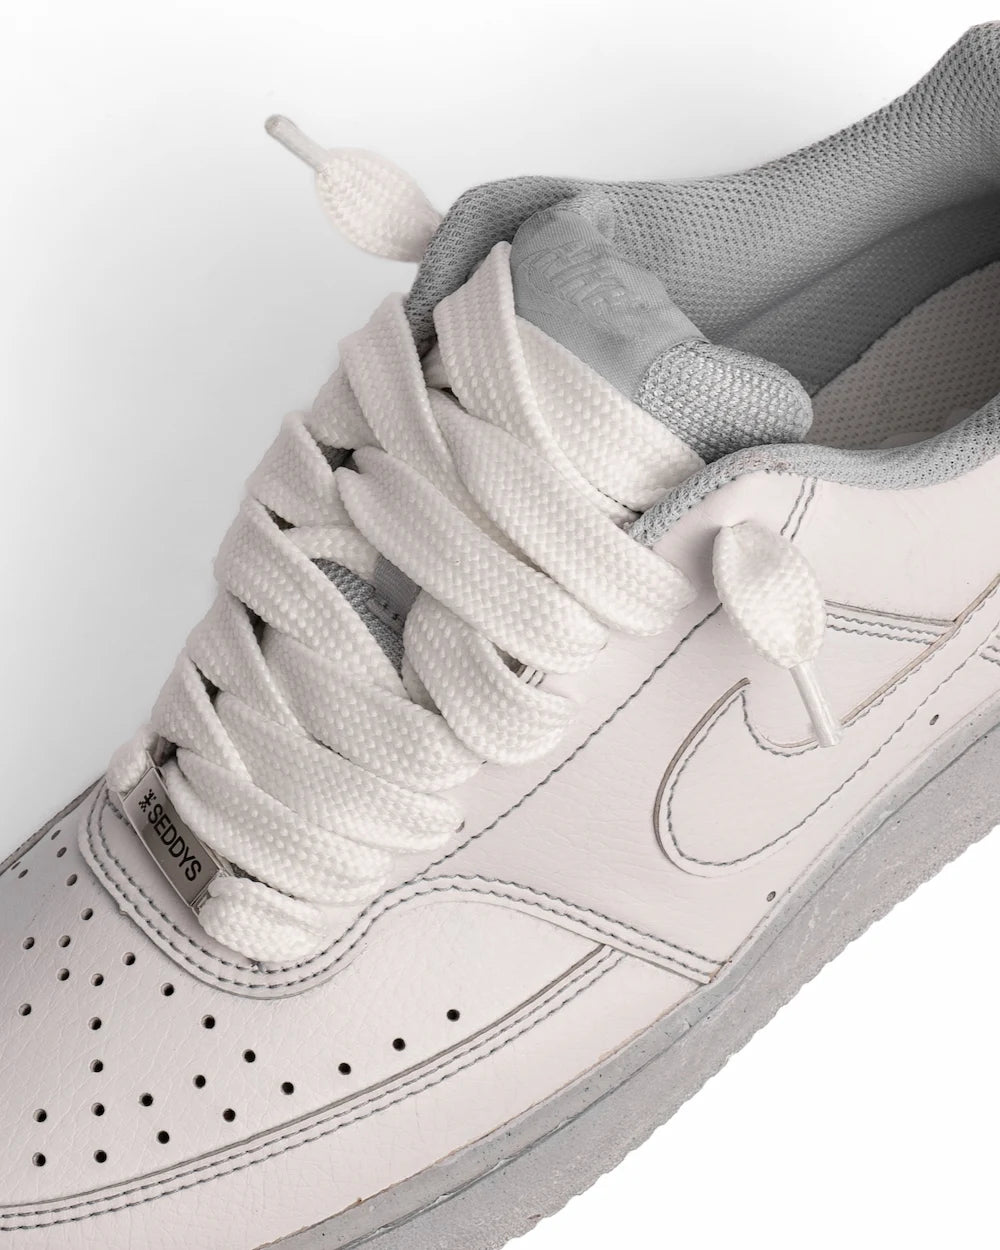 Nike Court Vision Dye Grey personalizzata in colore grigio chiaro